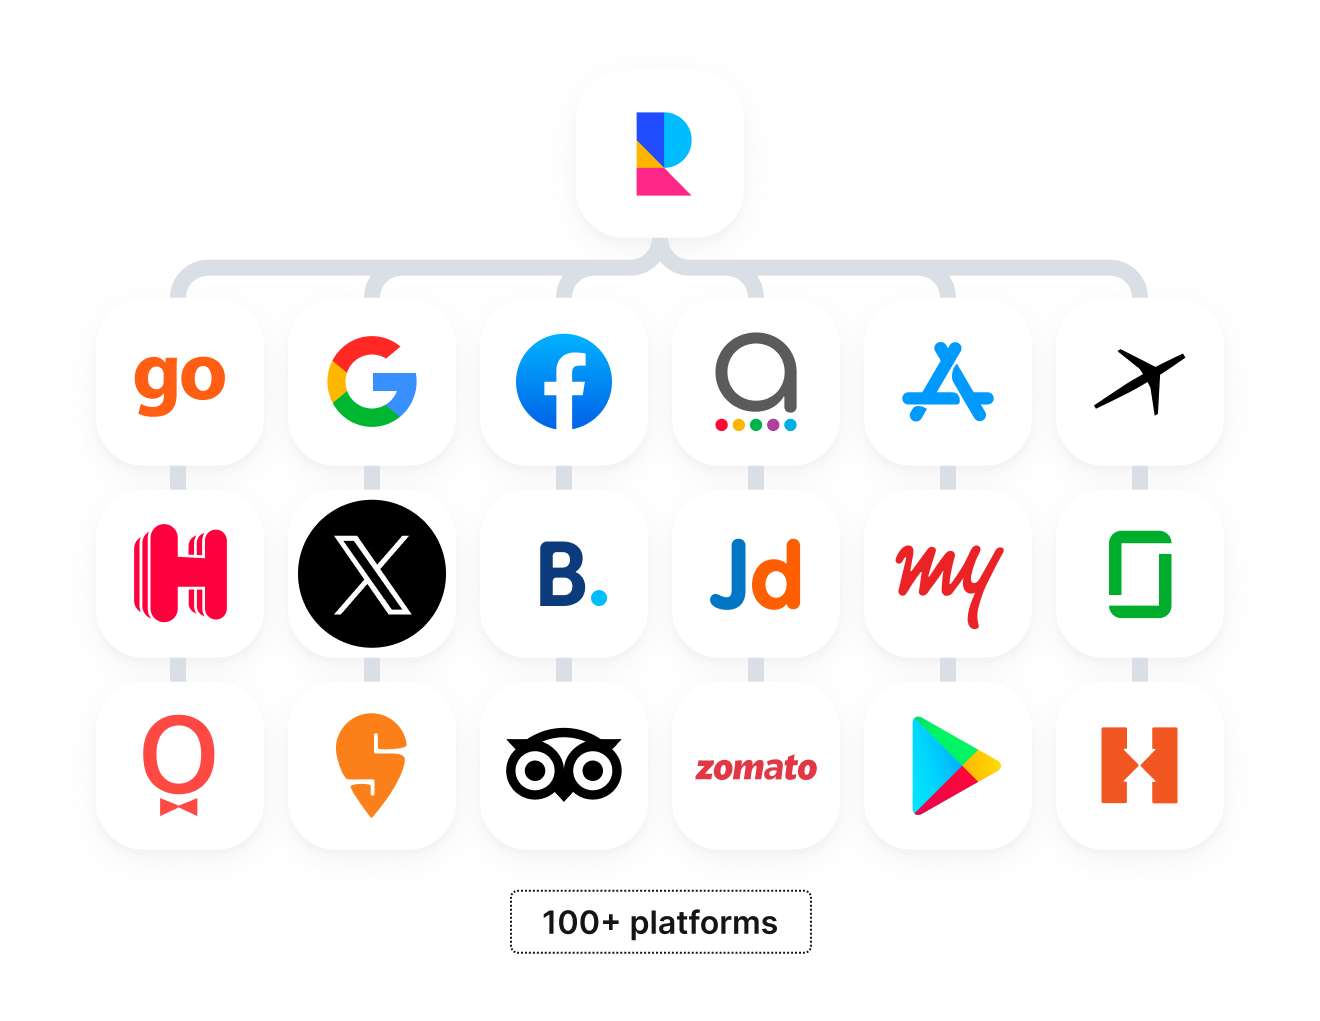 Assorted social media and online platform icons indicating integration with 100+ platforms for comprehensive digital management.